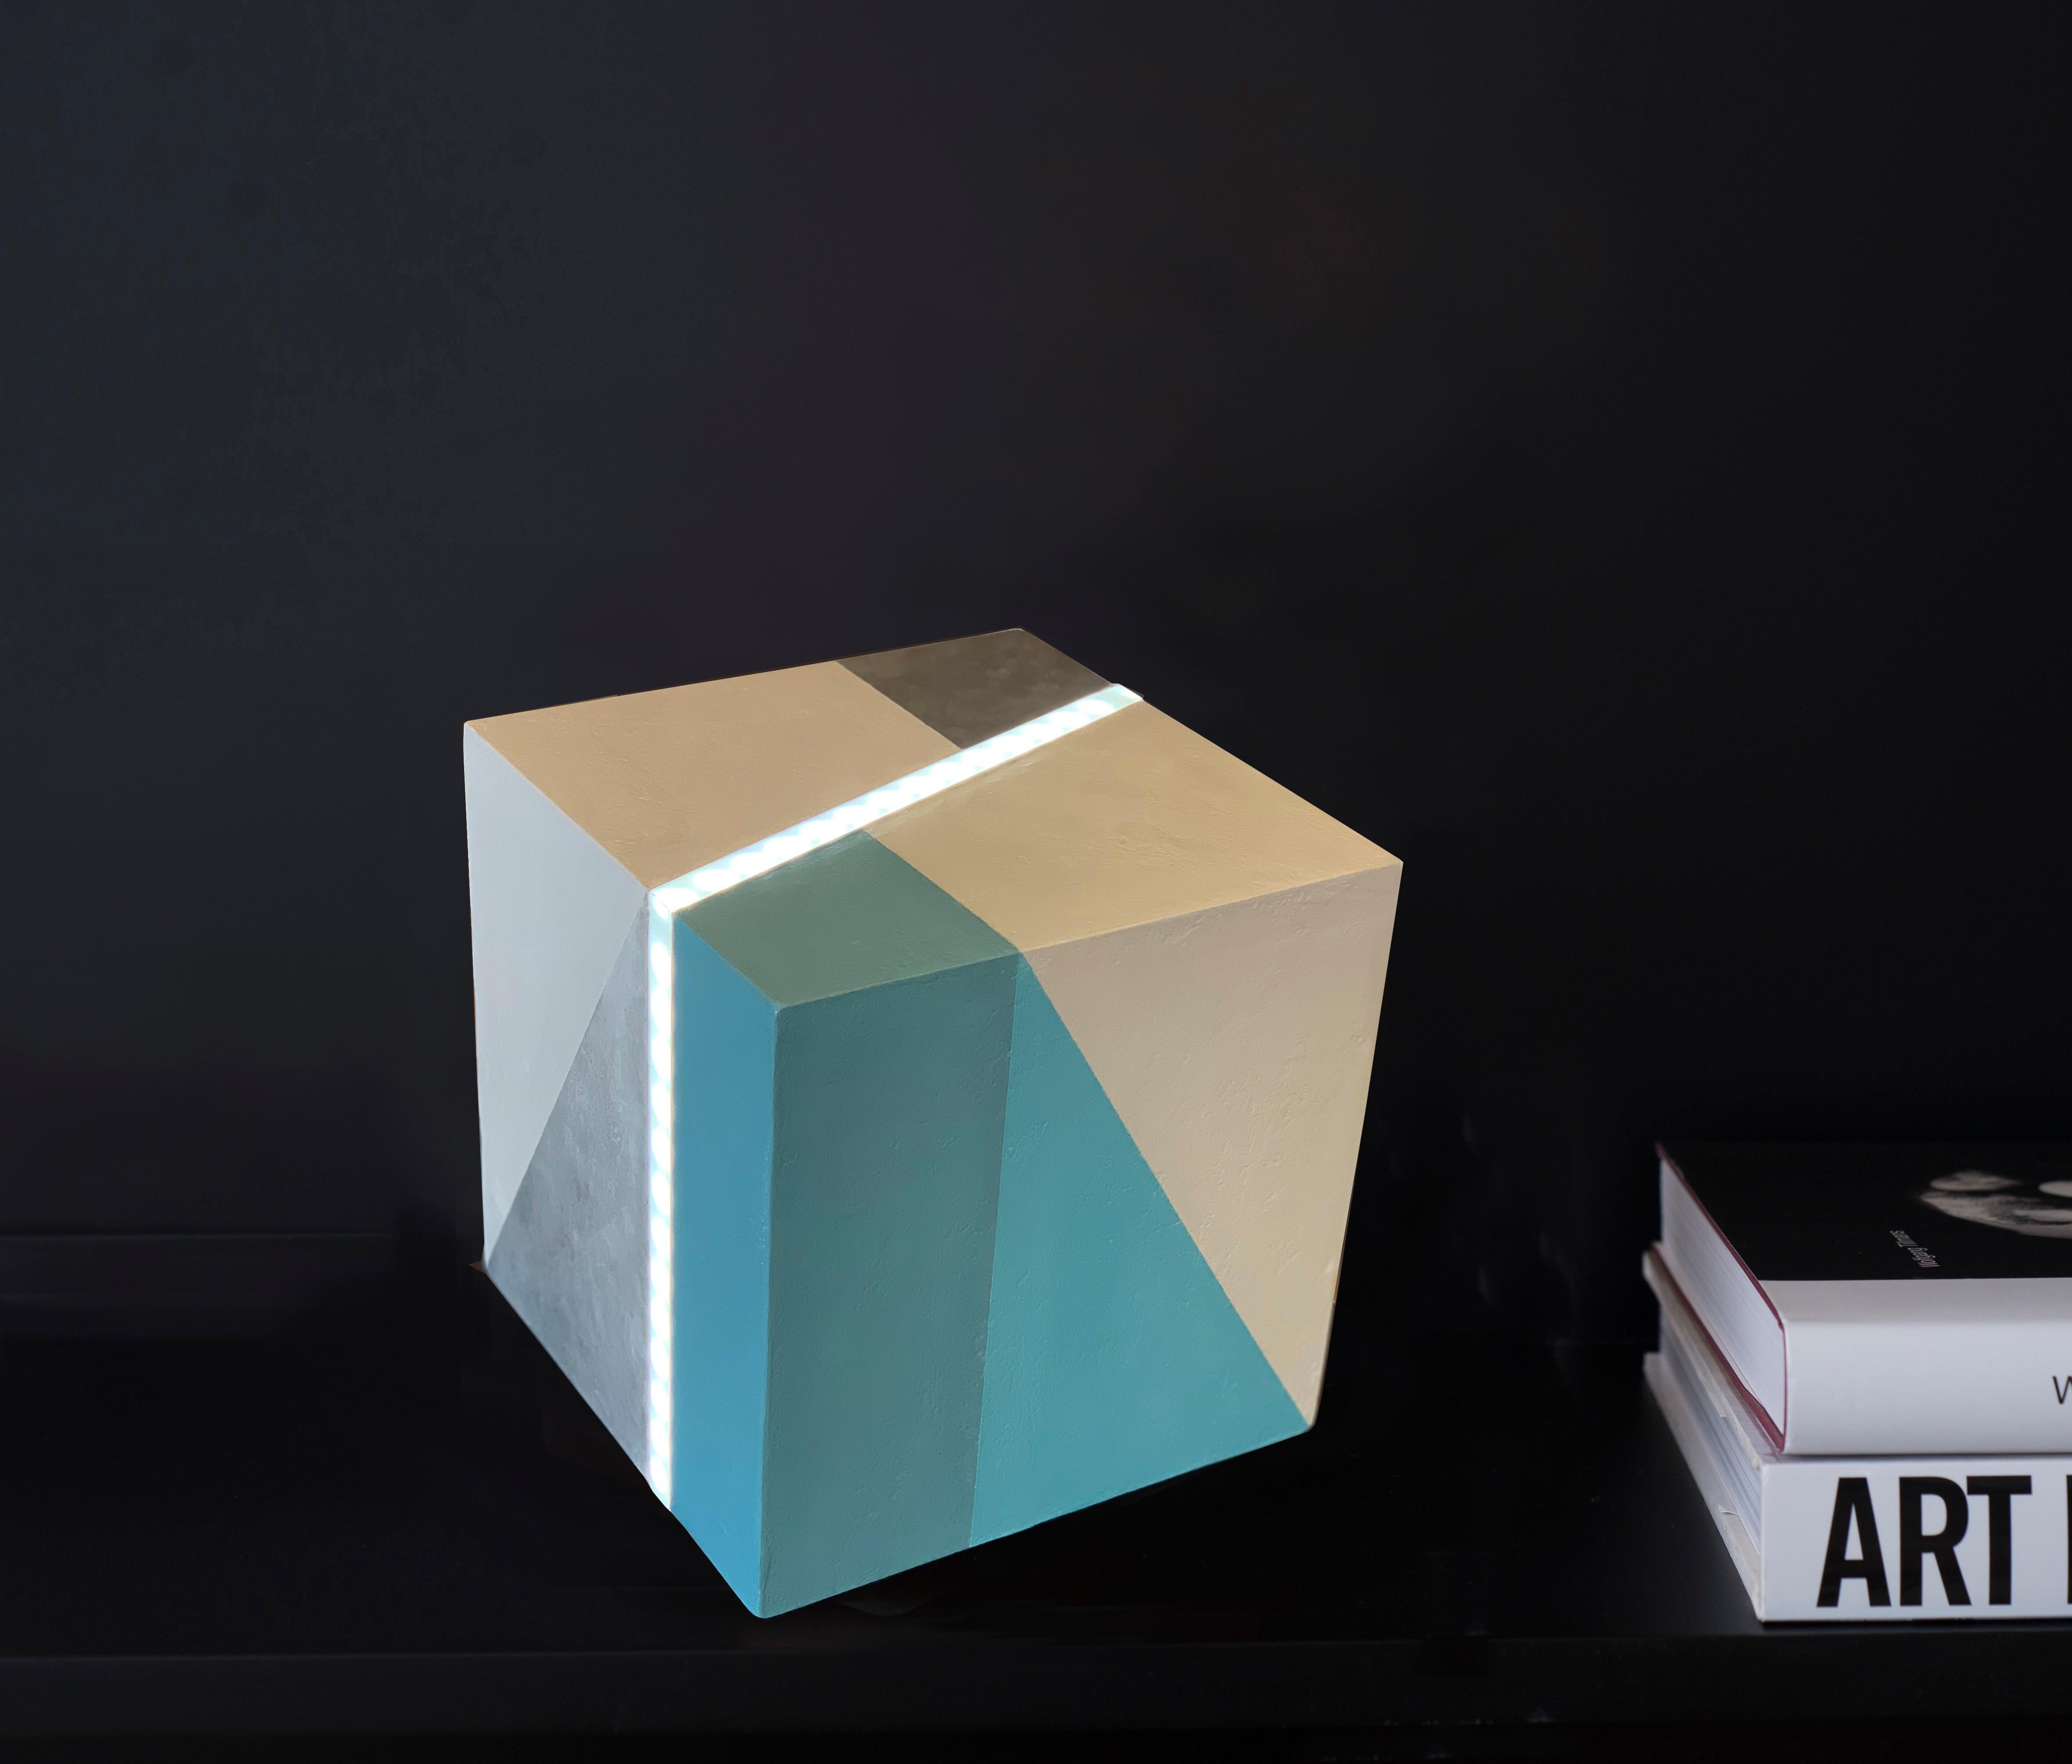 Cube Led Light . Mixed media on wood with LED light